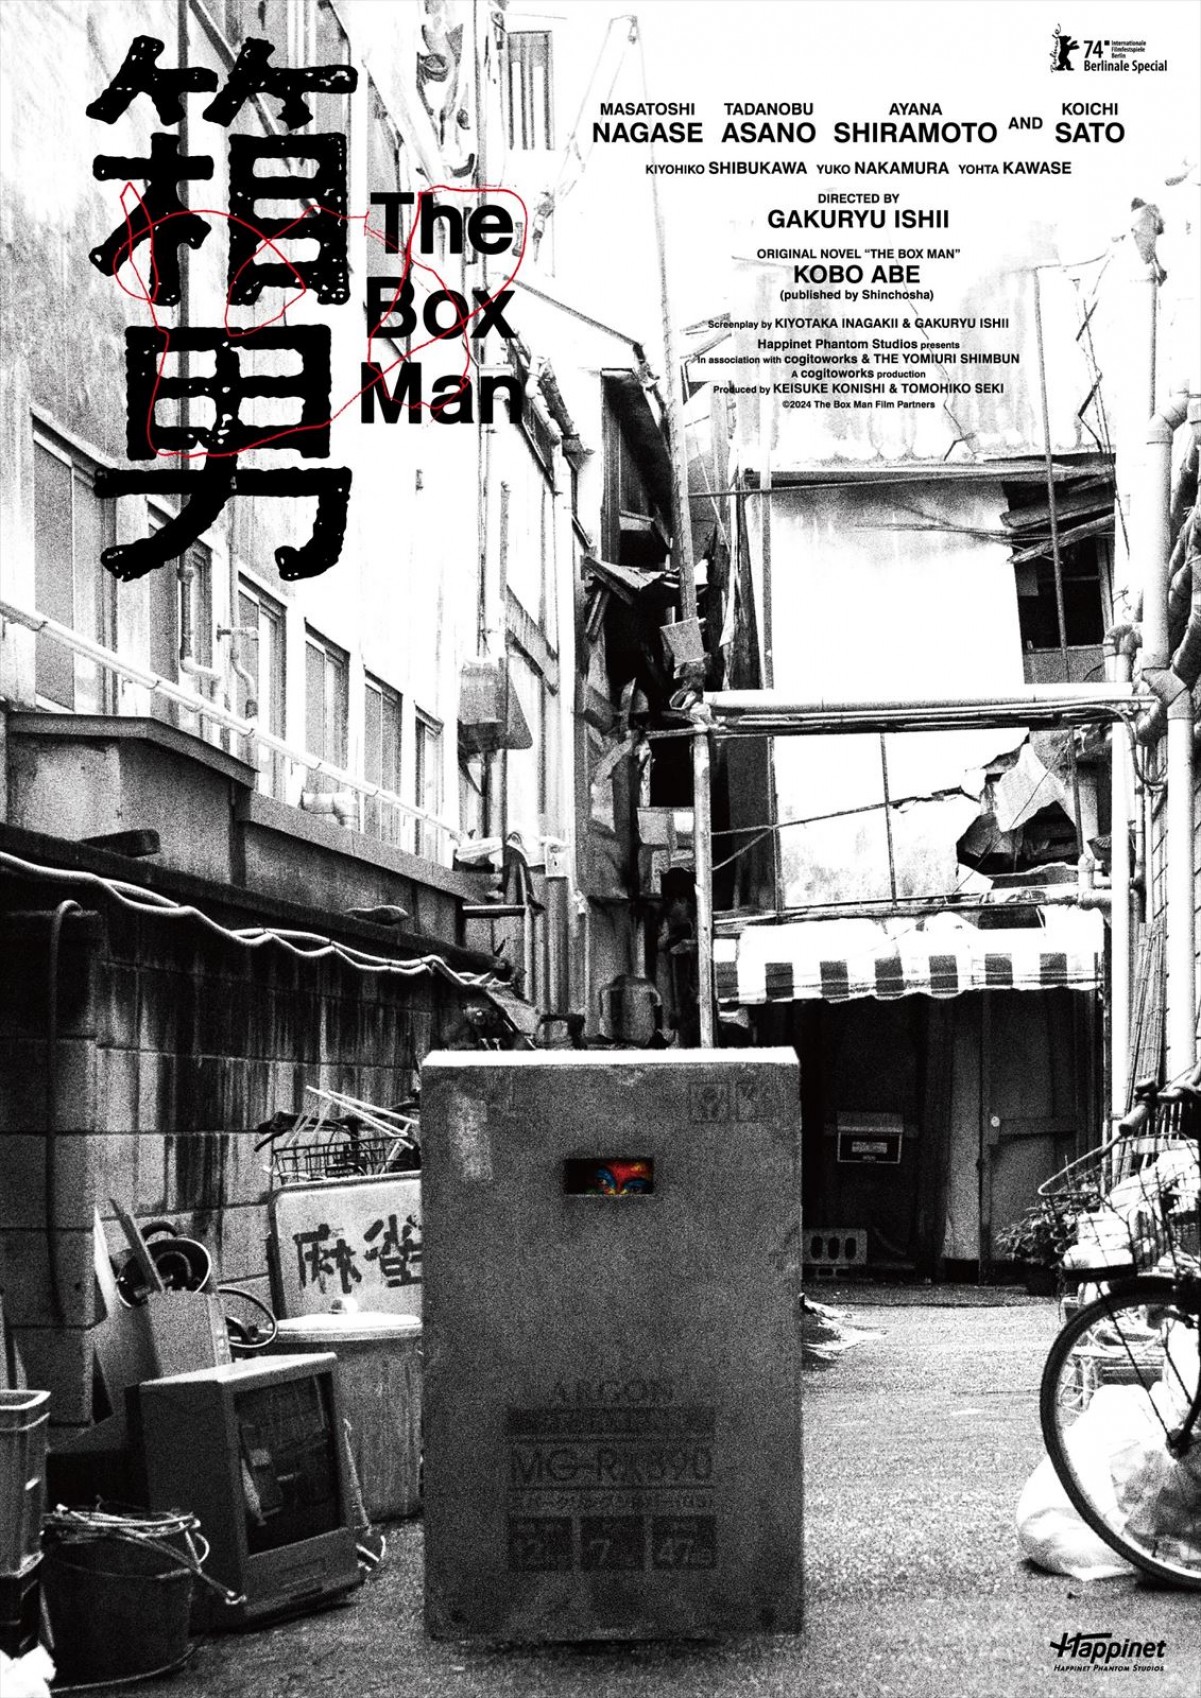 映画『箱男』ベルリン国際映画祭ポスター